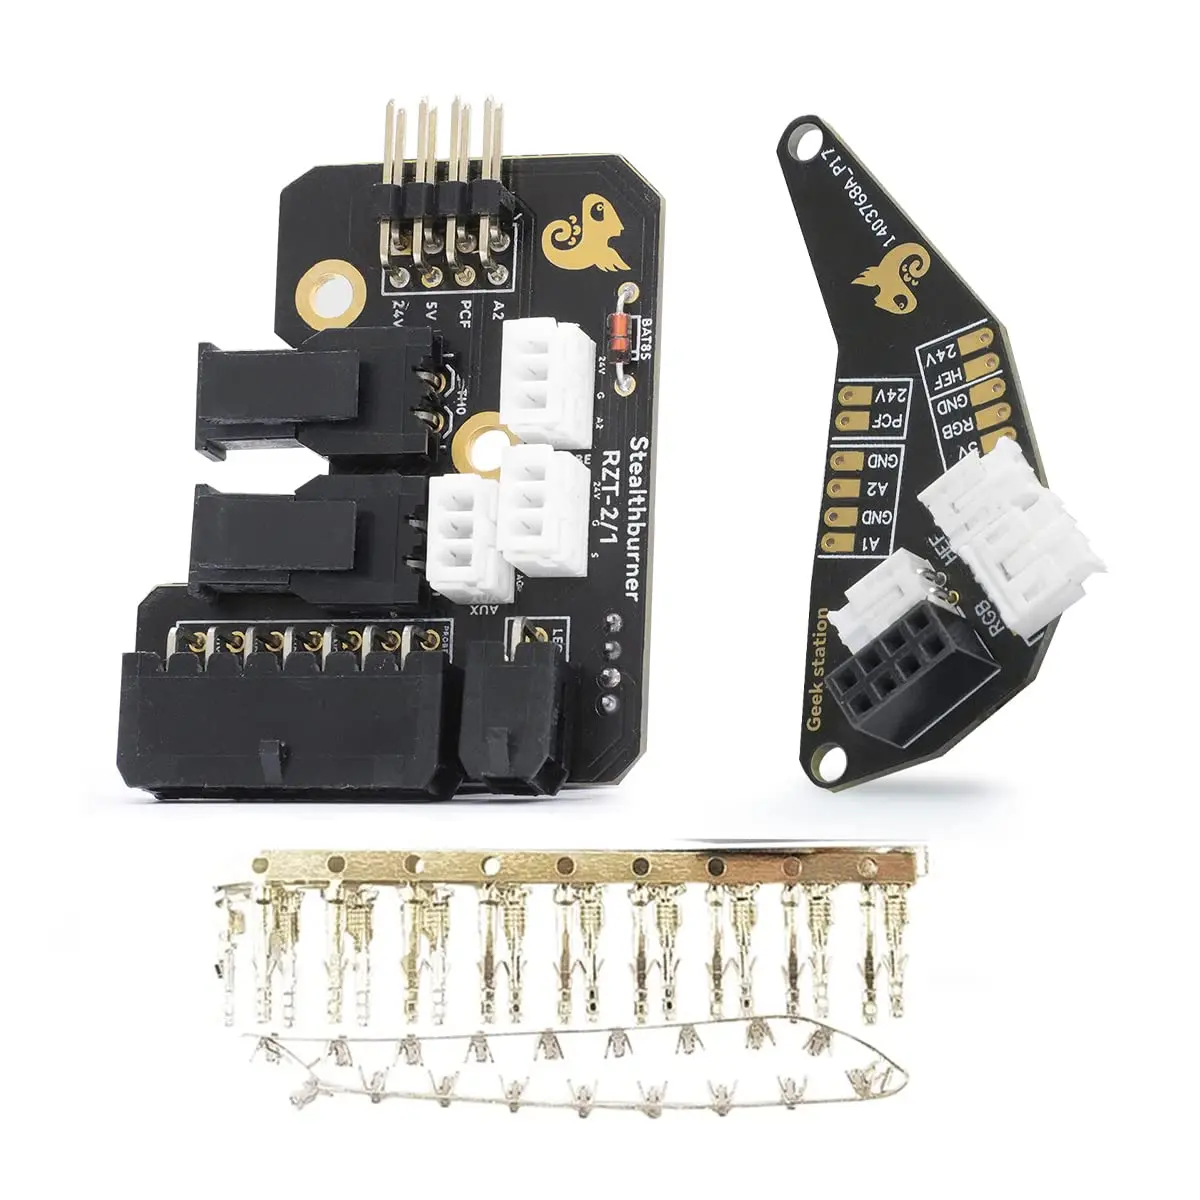 

Soldered Hartk SB Toolhead Board Afterburner PCB Kit For Voron 2.4 Trident Switchwire CW2 Extruder, Stealthburner 3D Printer